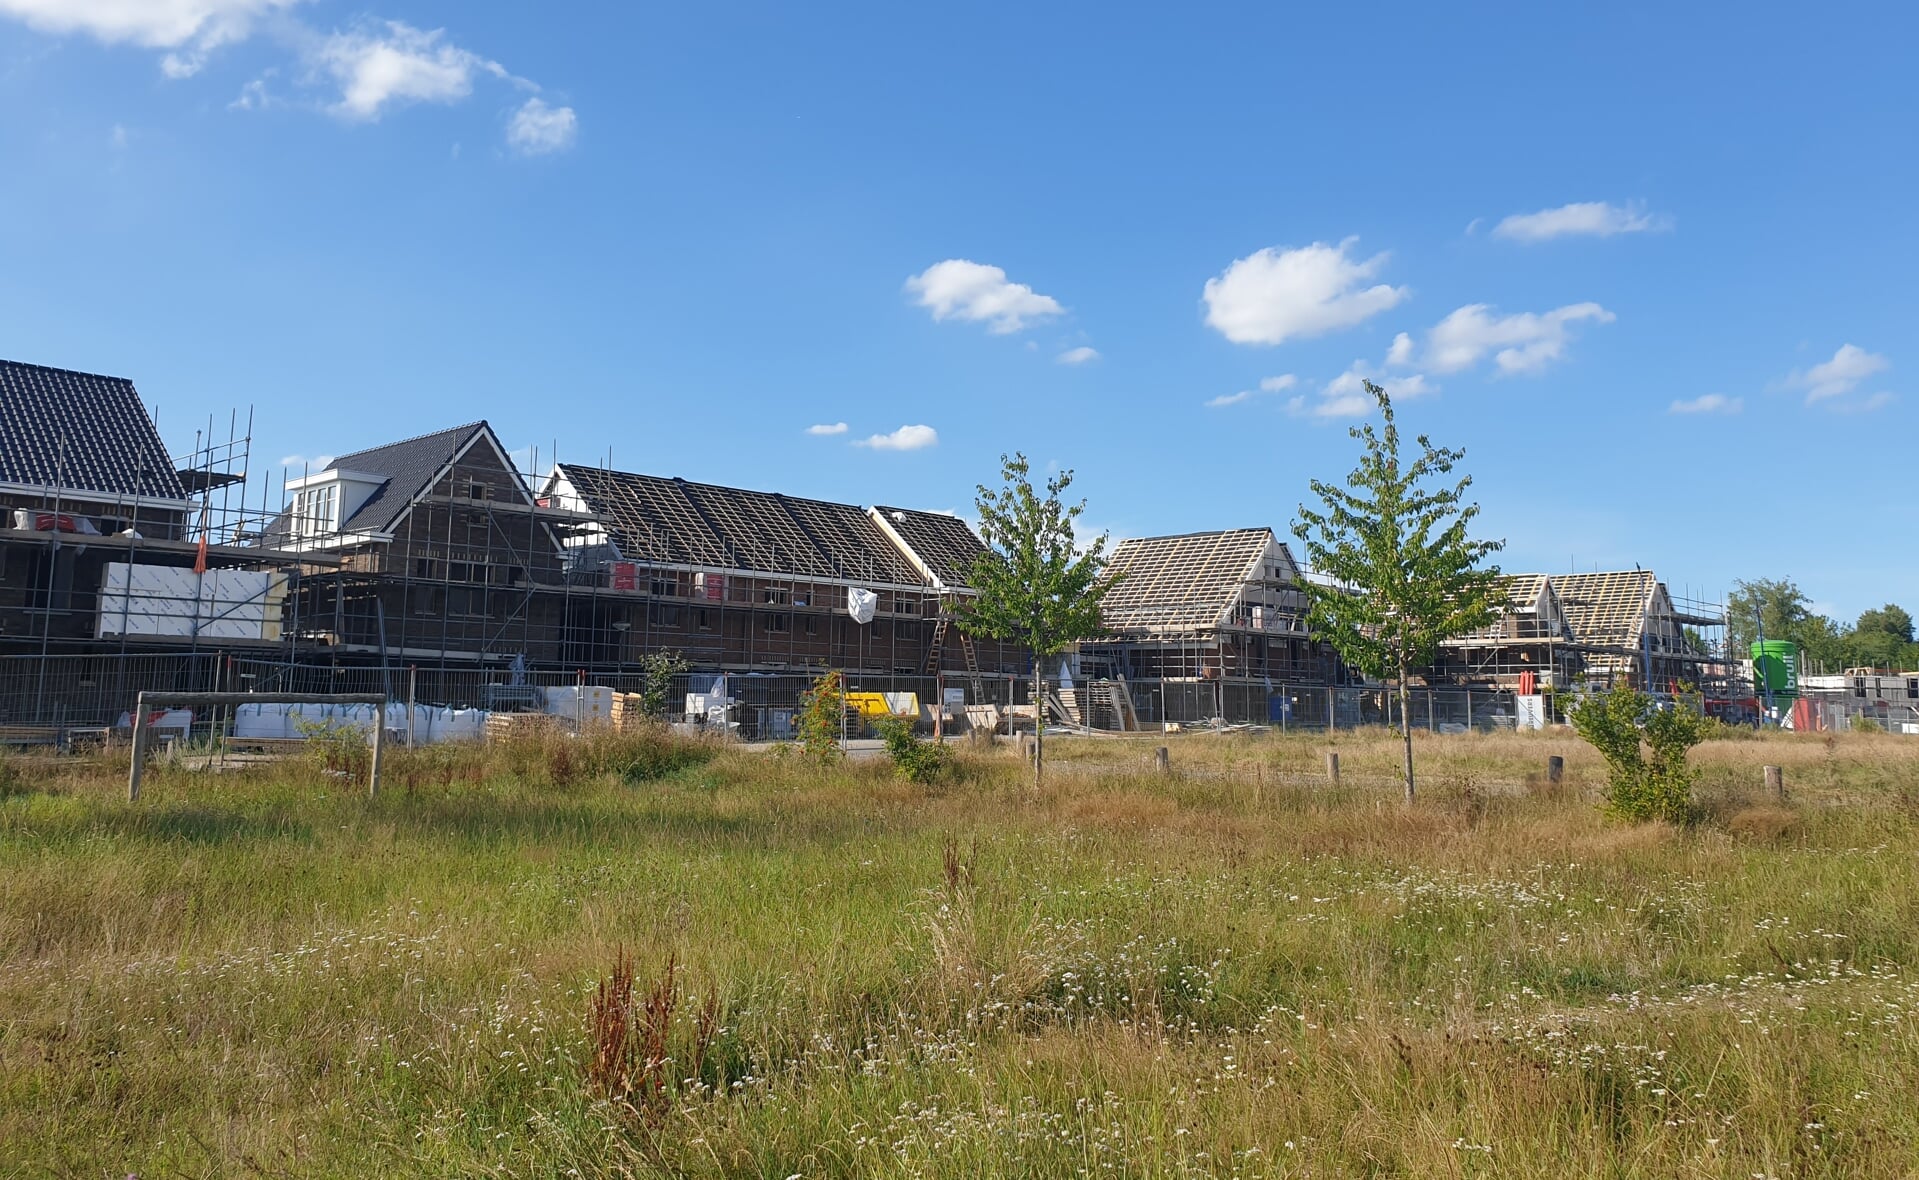 Fase twee van nieuwbouwwijk Reigerskant was vorig jaar augustus nog volop in aanbouw. Esch, maar ook Liempde en Lennisheuvel kunnen zich de komende negen jaar verheugen op meer goedkope huizen en sociale huur, als het aan het college van B en W ligt.